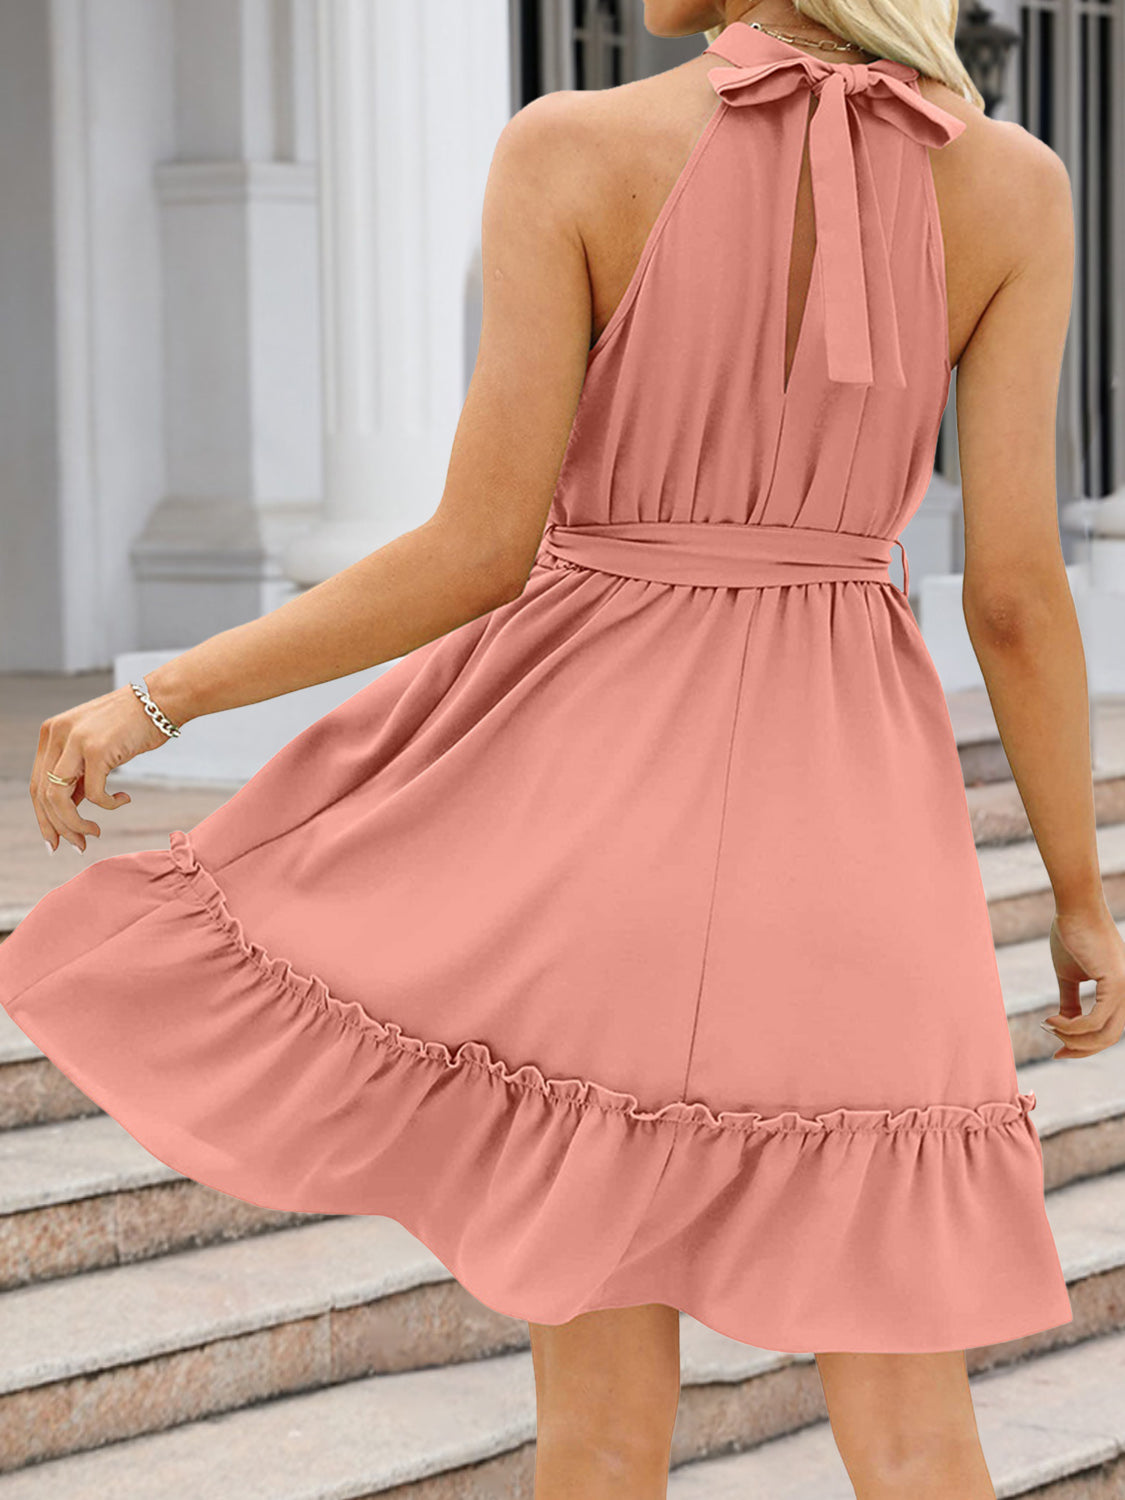 Summer Mini Dress| Grecian Dress| Halter Top Summer Dress